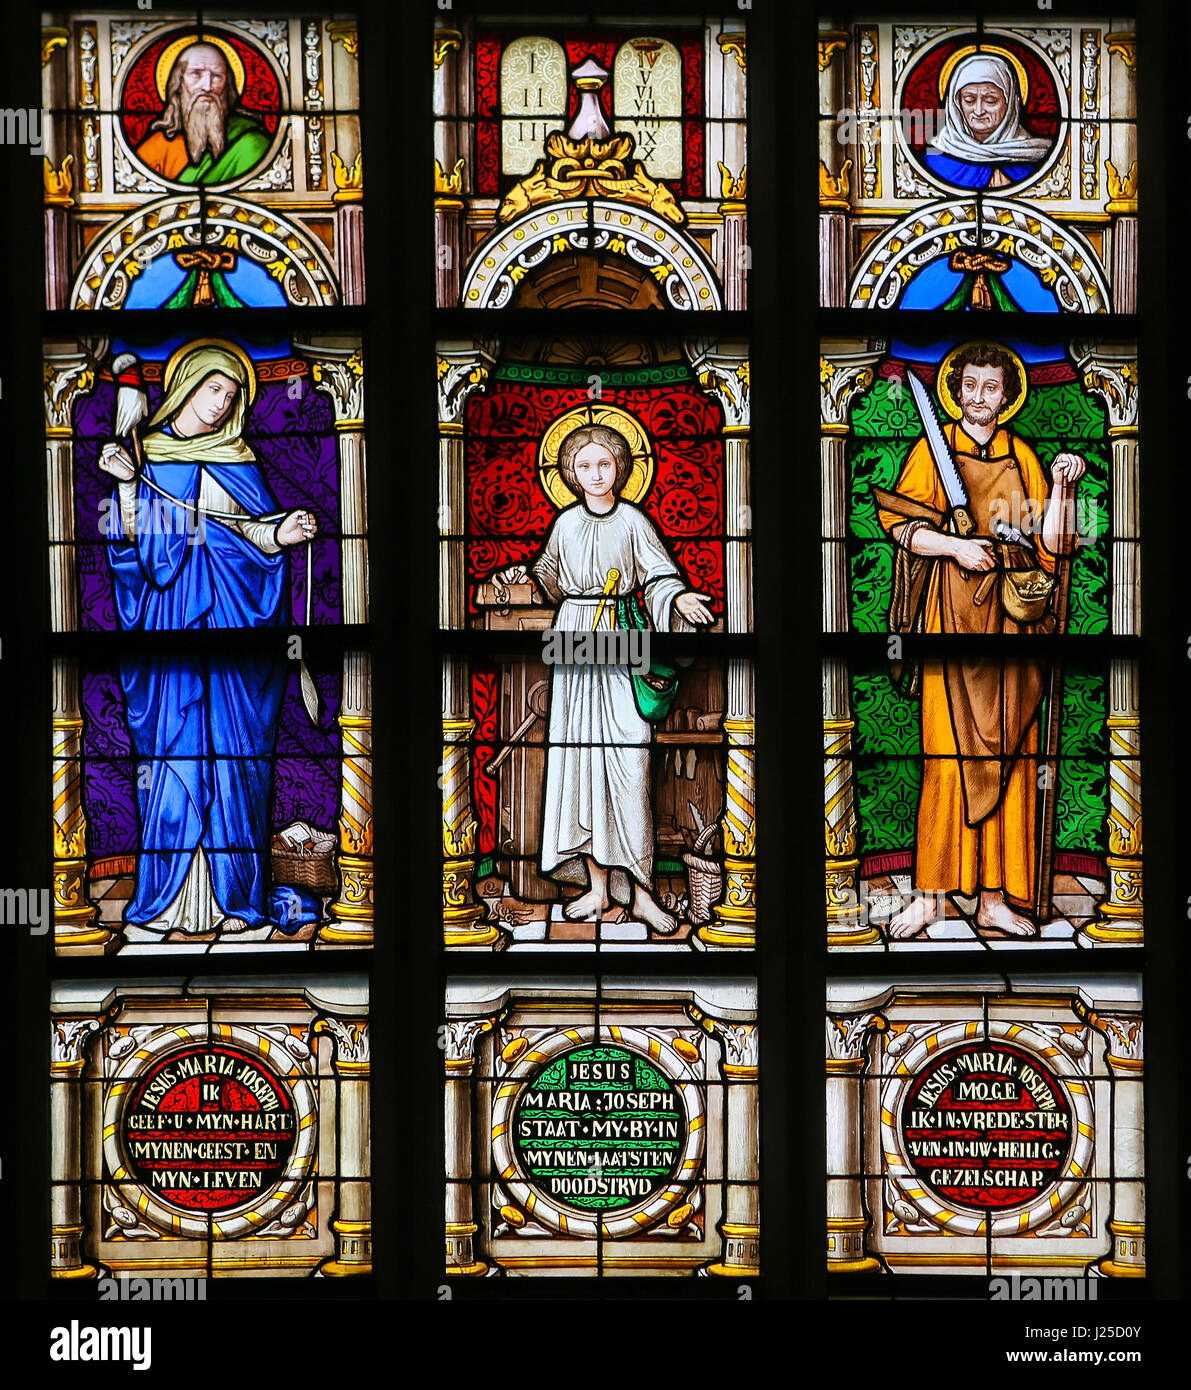 Vitrail dans la 15e siècle Chapelle Elzenveld à Anvers, Belgique, représentant la Vierge Marie, Jésus et saint Joseph Banque D'Images